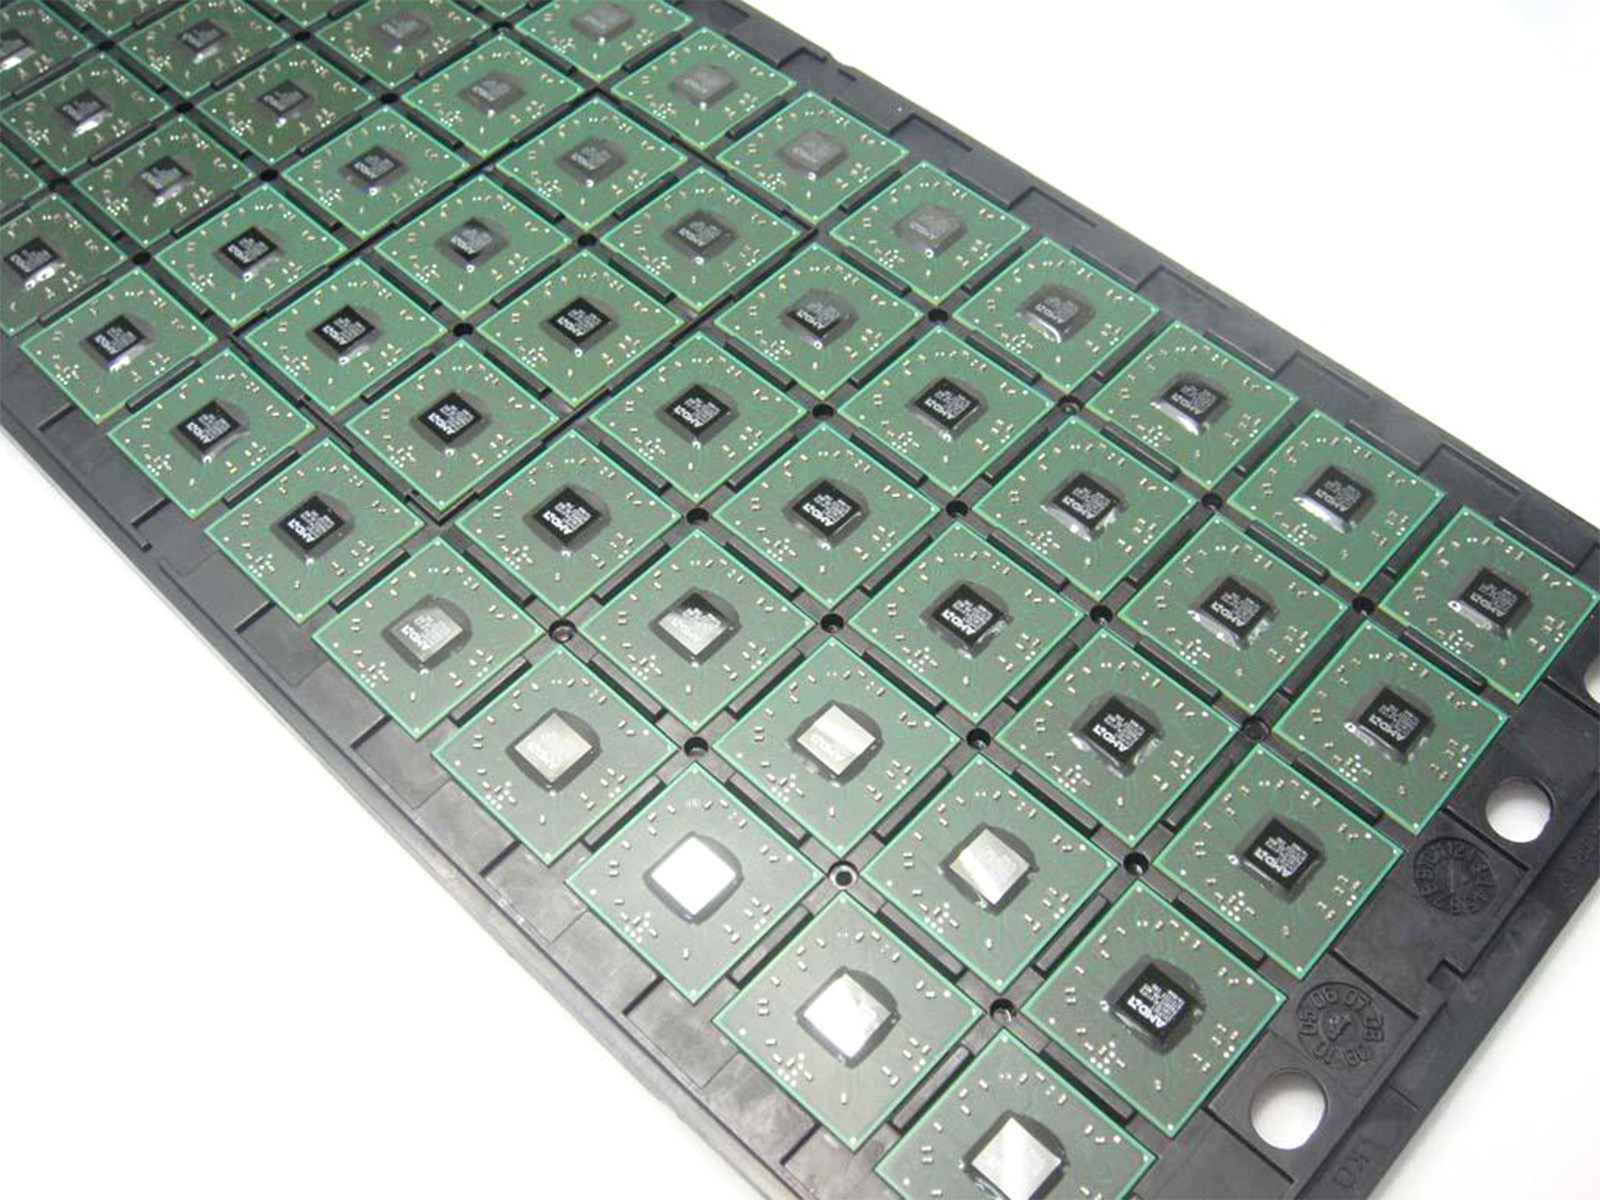 AMD ATI HD3650